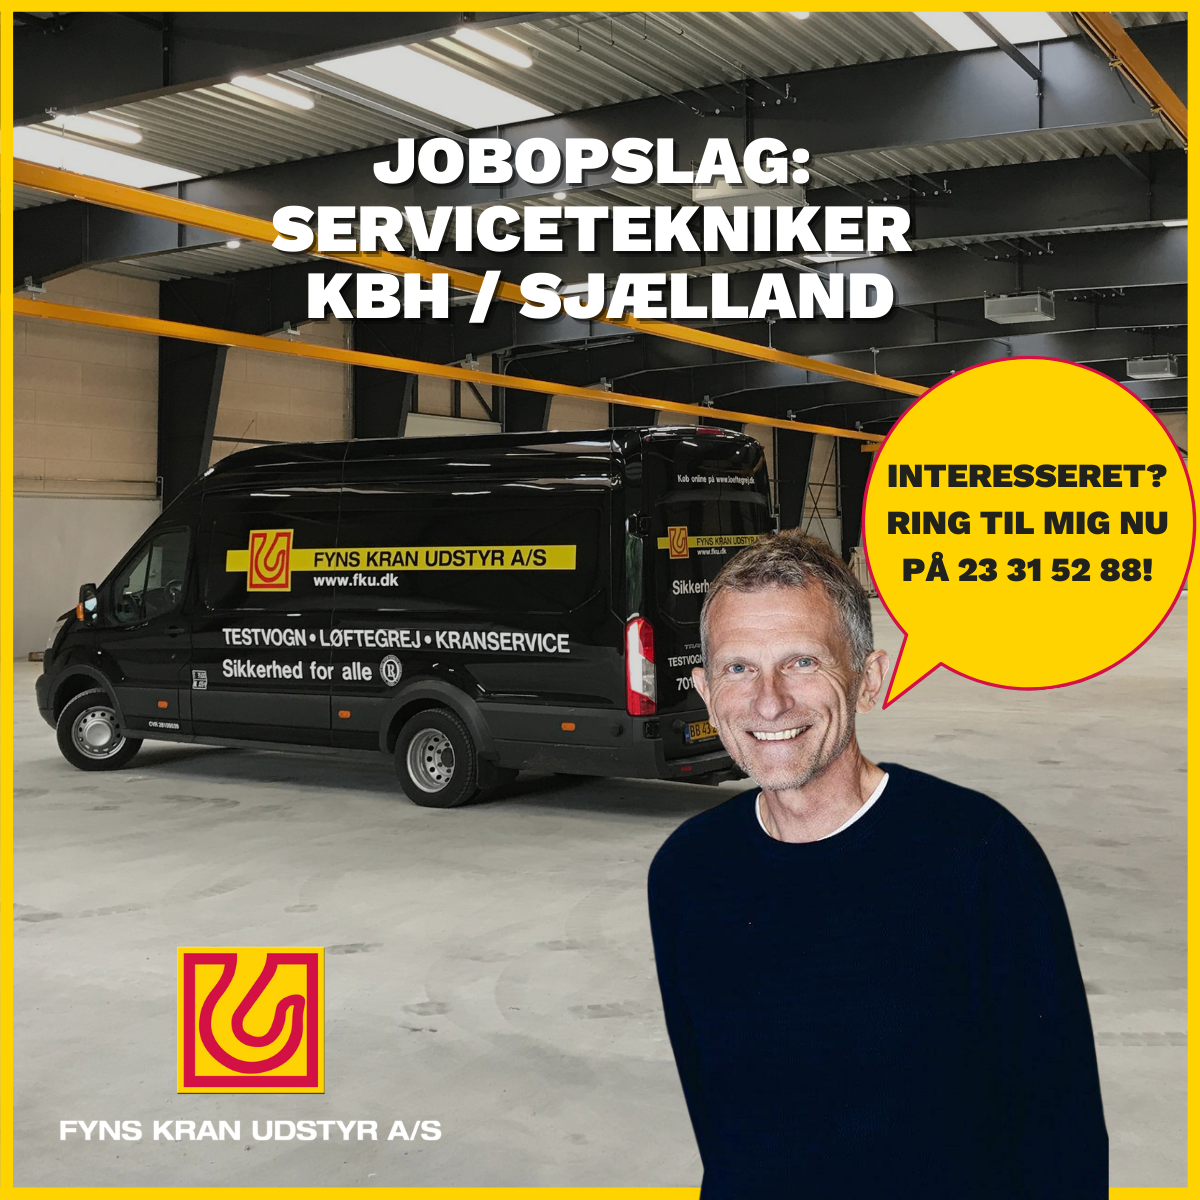 Måske er du vores servicetekniker i KBH/på Sjælland?